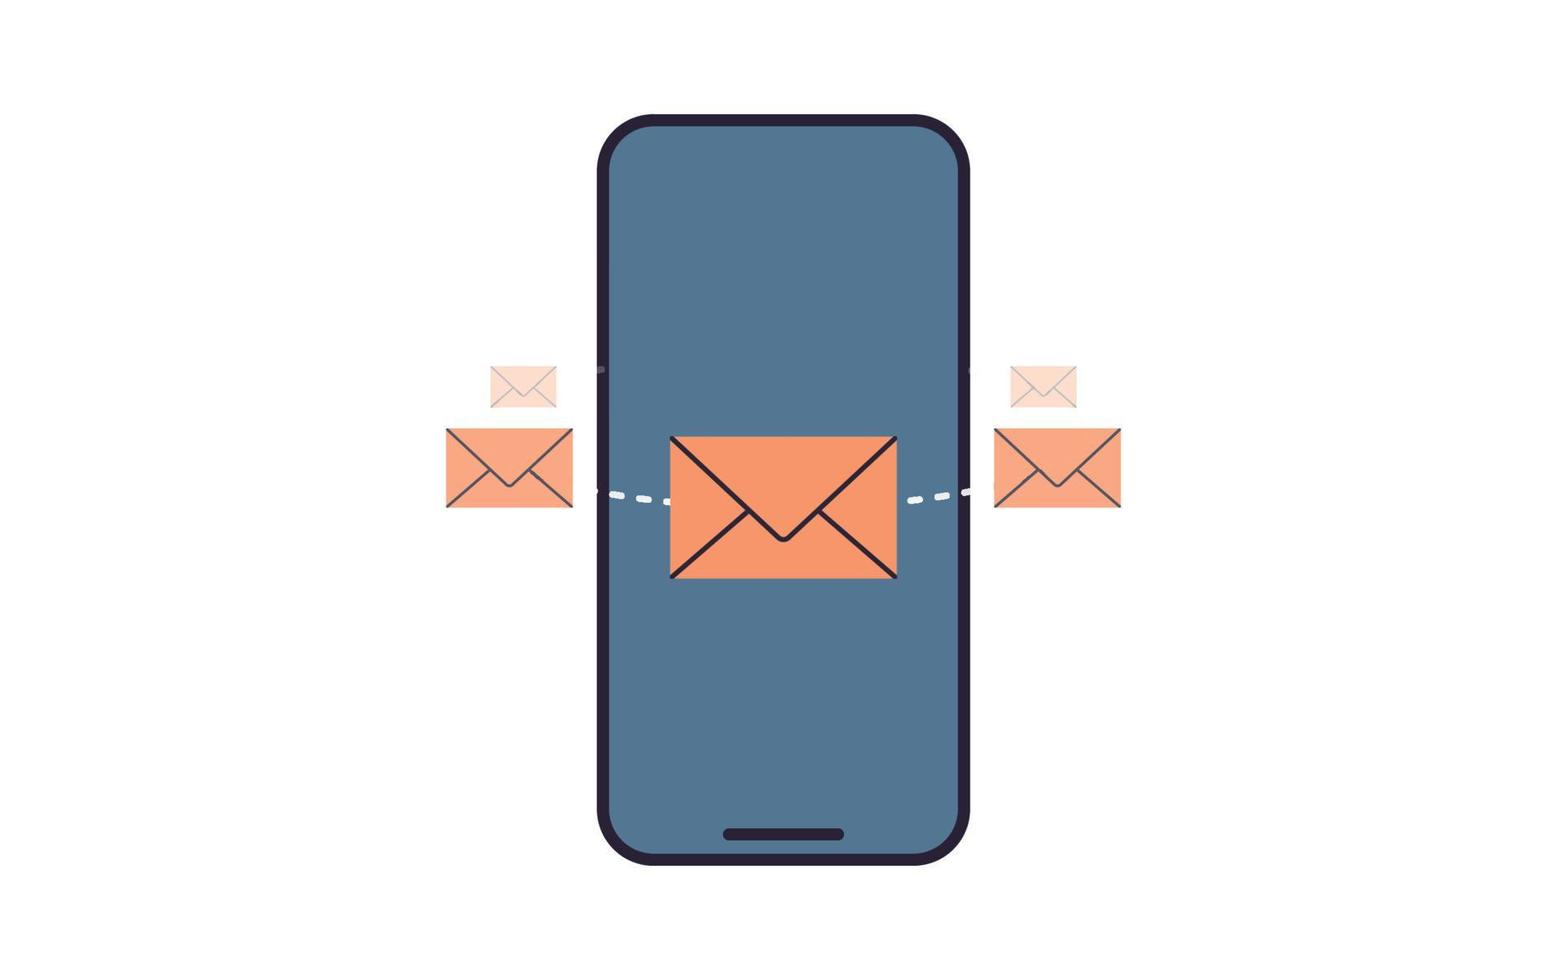 correio e smartphone ilustração em vetor plana.